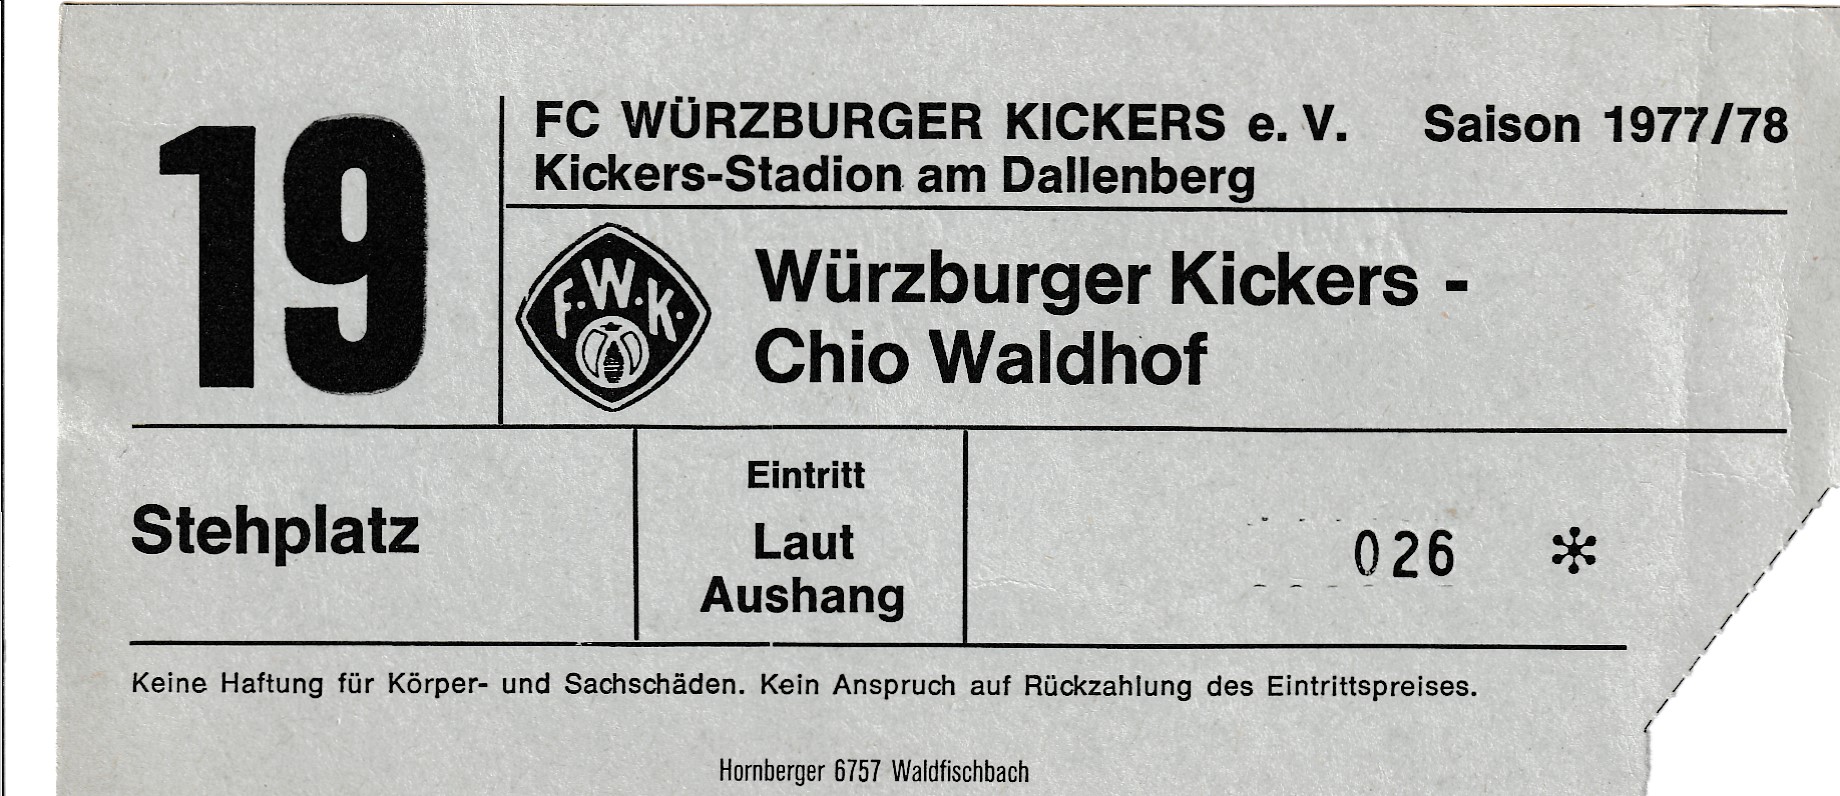 Eintrittskarte 1977 78 Würzburger Kickers-SV Chio Waldhof.jpg